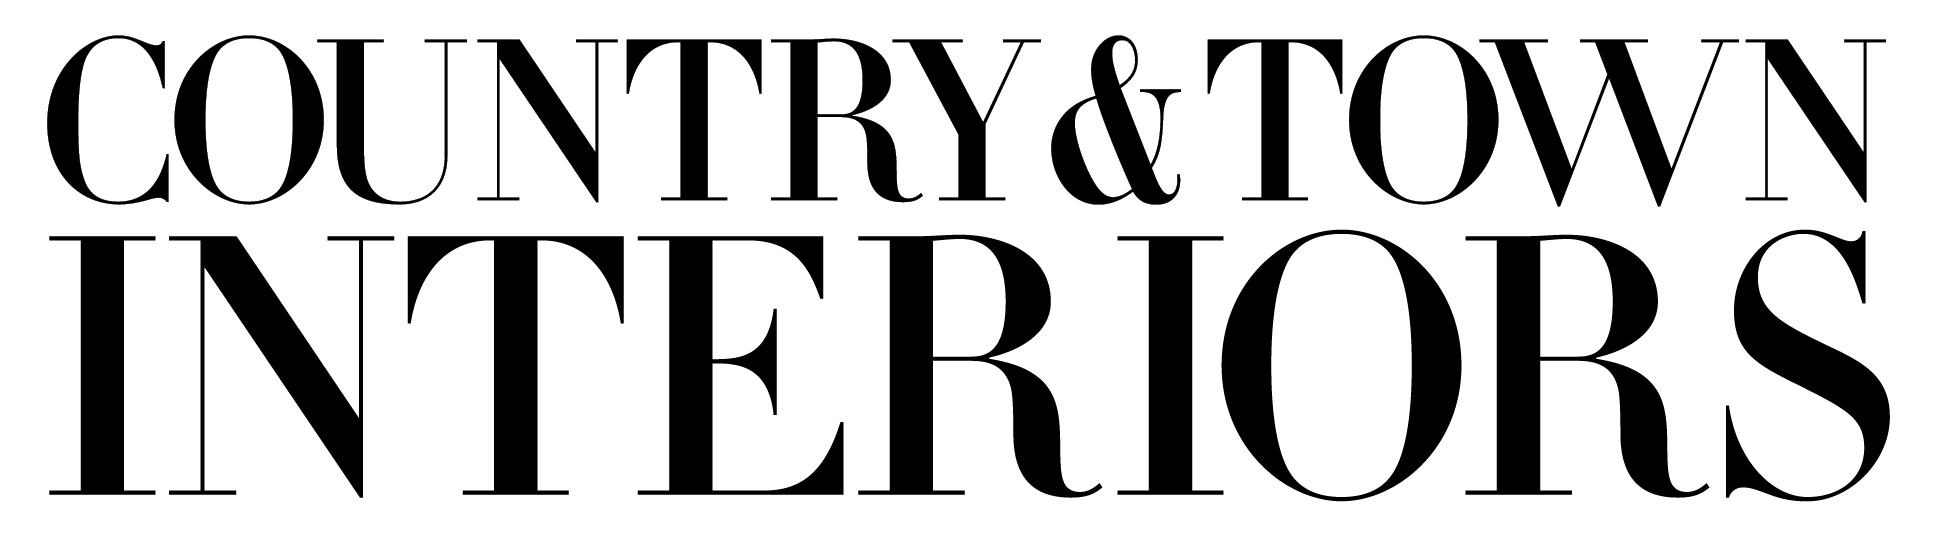 CT-INTERIORS-Logo-BLACK